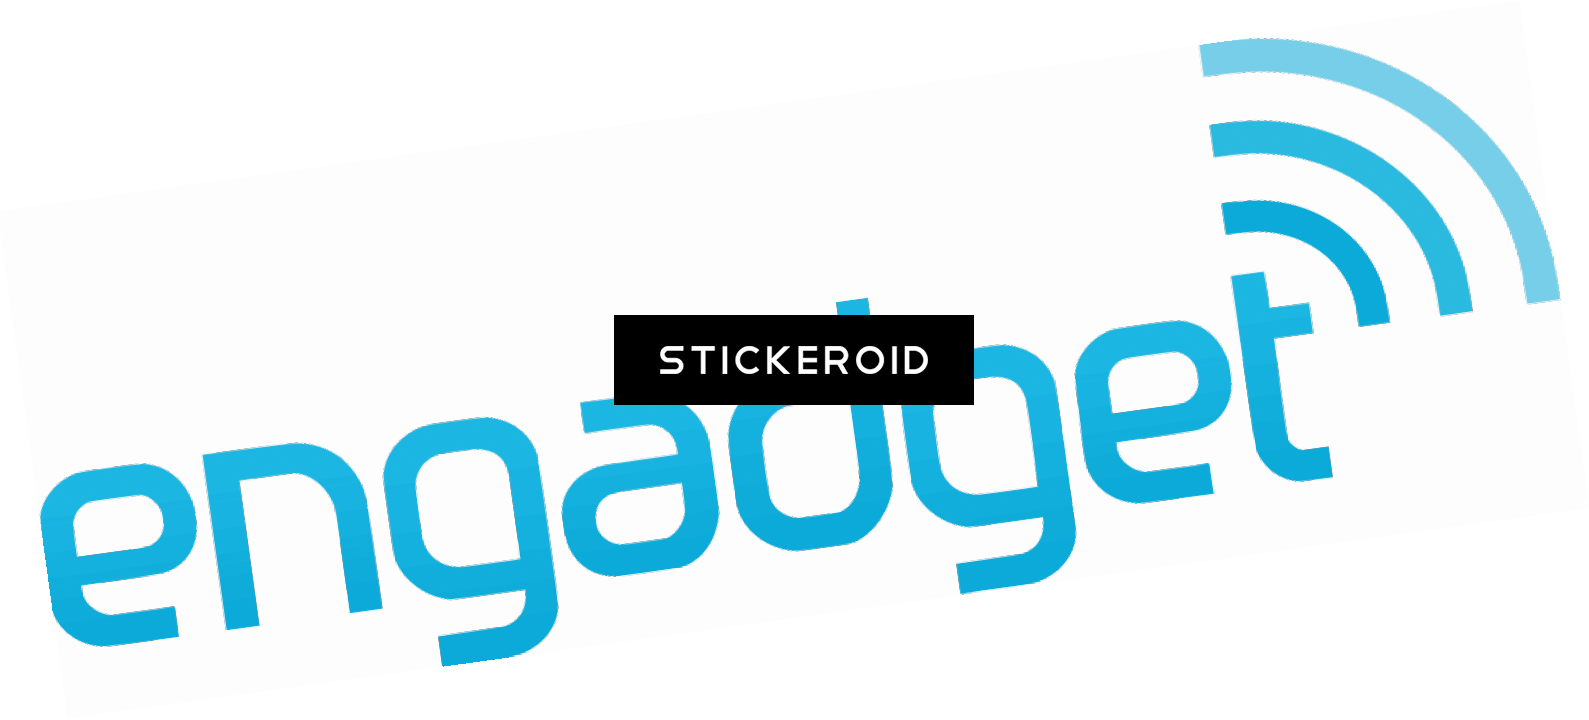 Engaget Logo - Engadget Logo.PNG